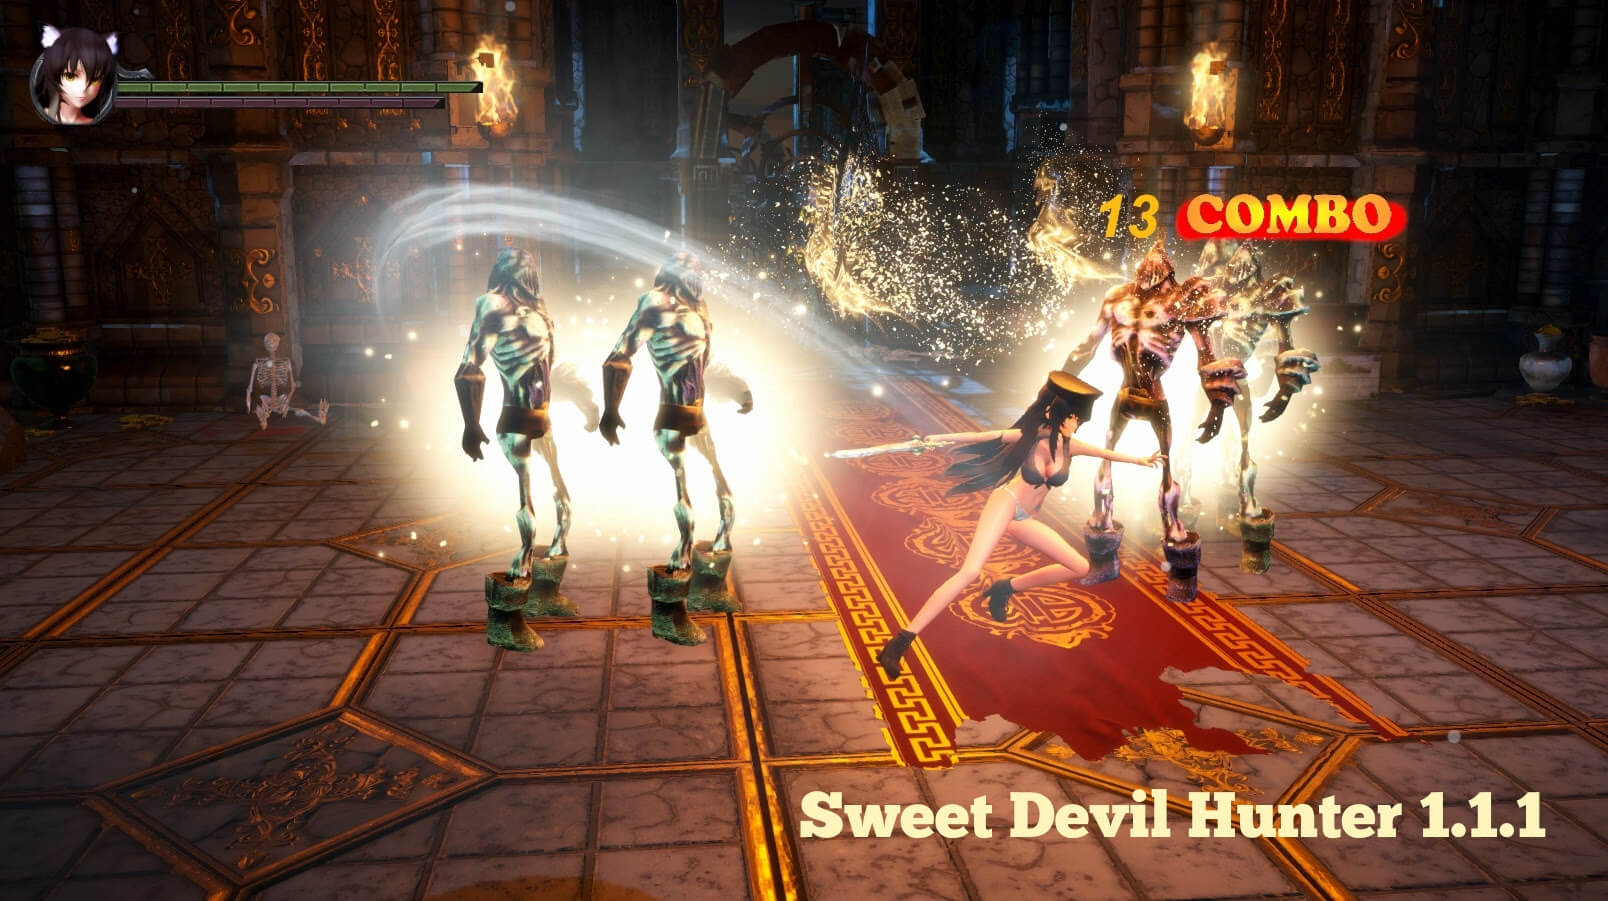 Sweet Devil Hunter 1.1.1